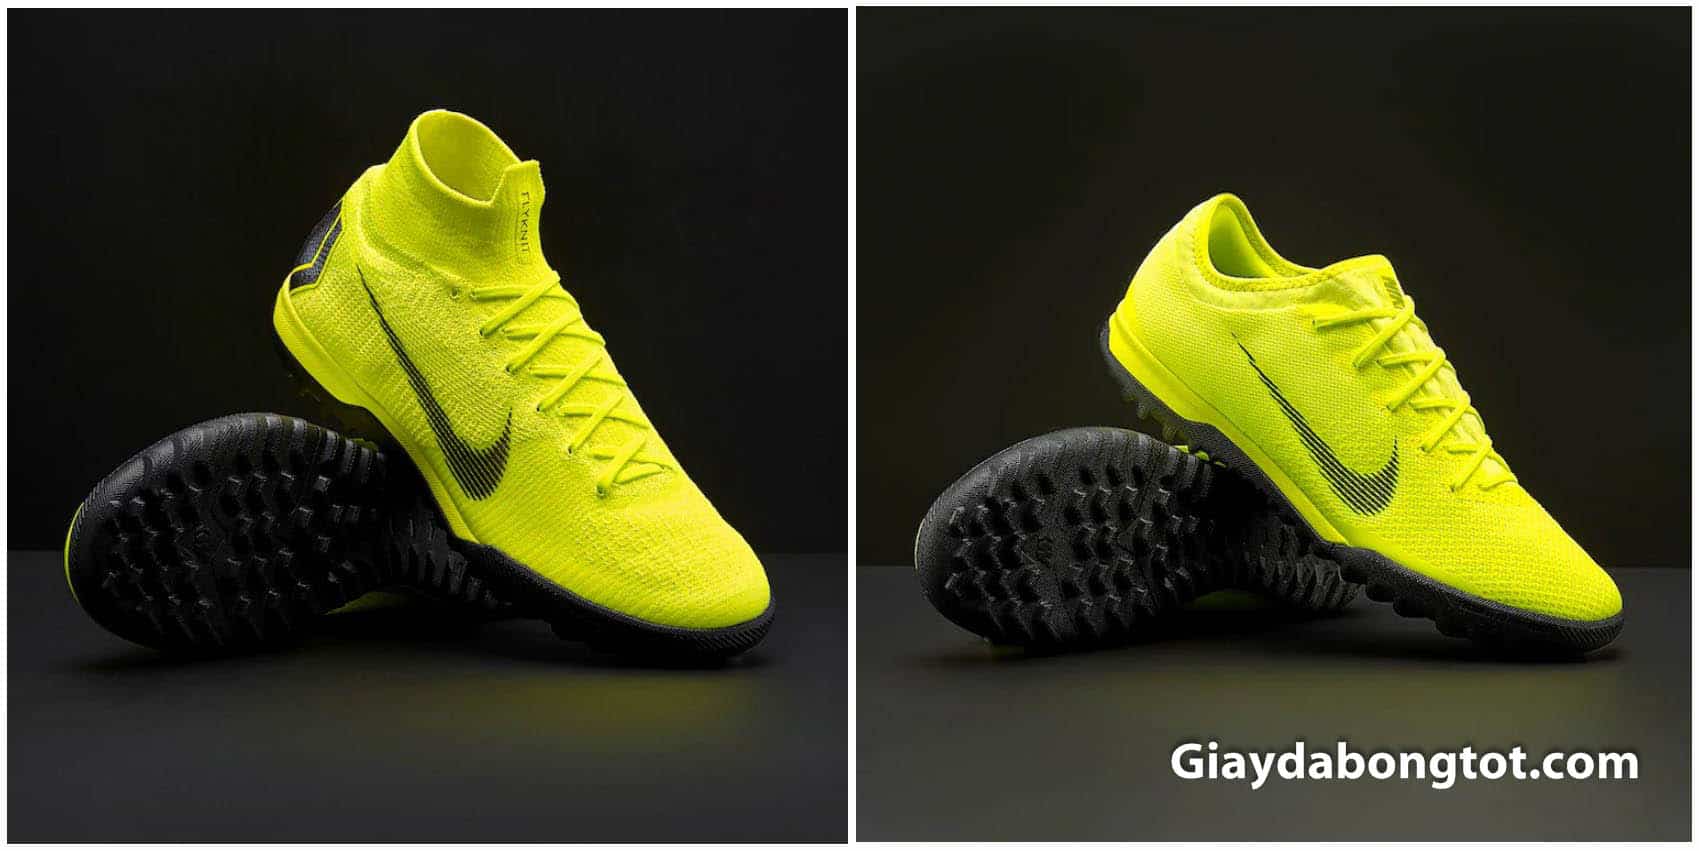 Phiên bản giày đá bóng Nike Mercurial Elite và Pro với sự khác nhau về chất liệu và công nghệ